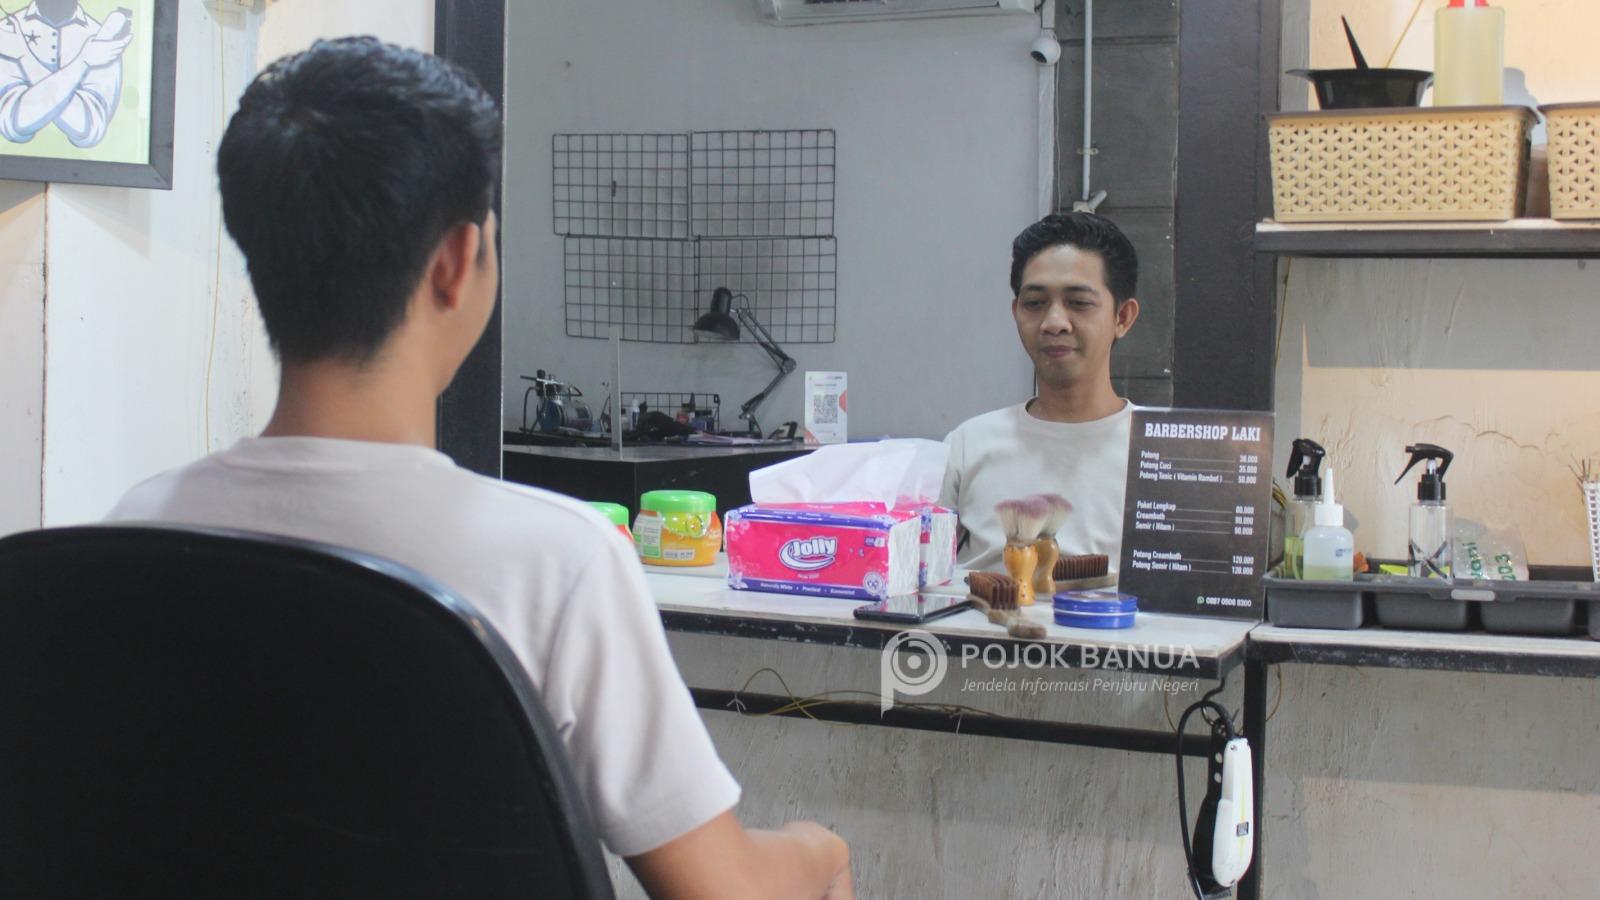 Suasana lebaran, tukang cukur di Banjarmasin kebanjiran pelanggan